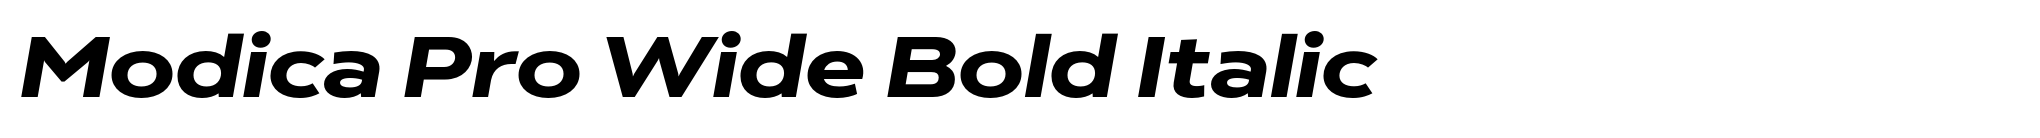 Modica Pro Wide Bold Italic image